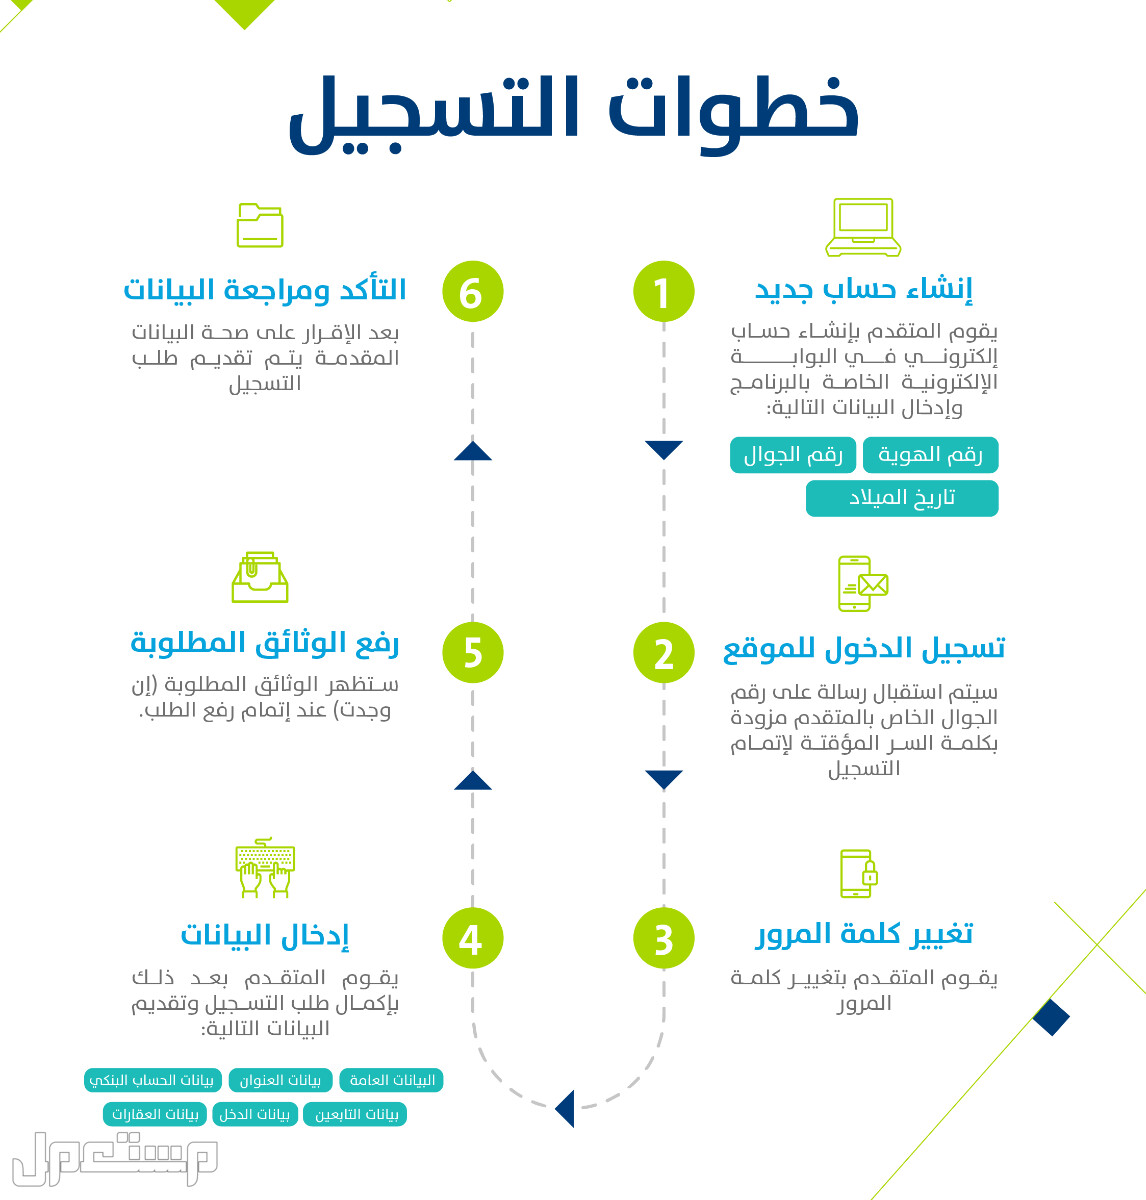 تعرف على كيفية التسجيل في حساب المواطن عقب تمديد الدعم الإضافي 1444 بالخطوات في السعودية خطوات التسجيل